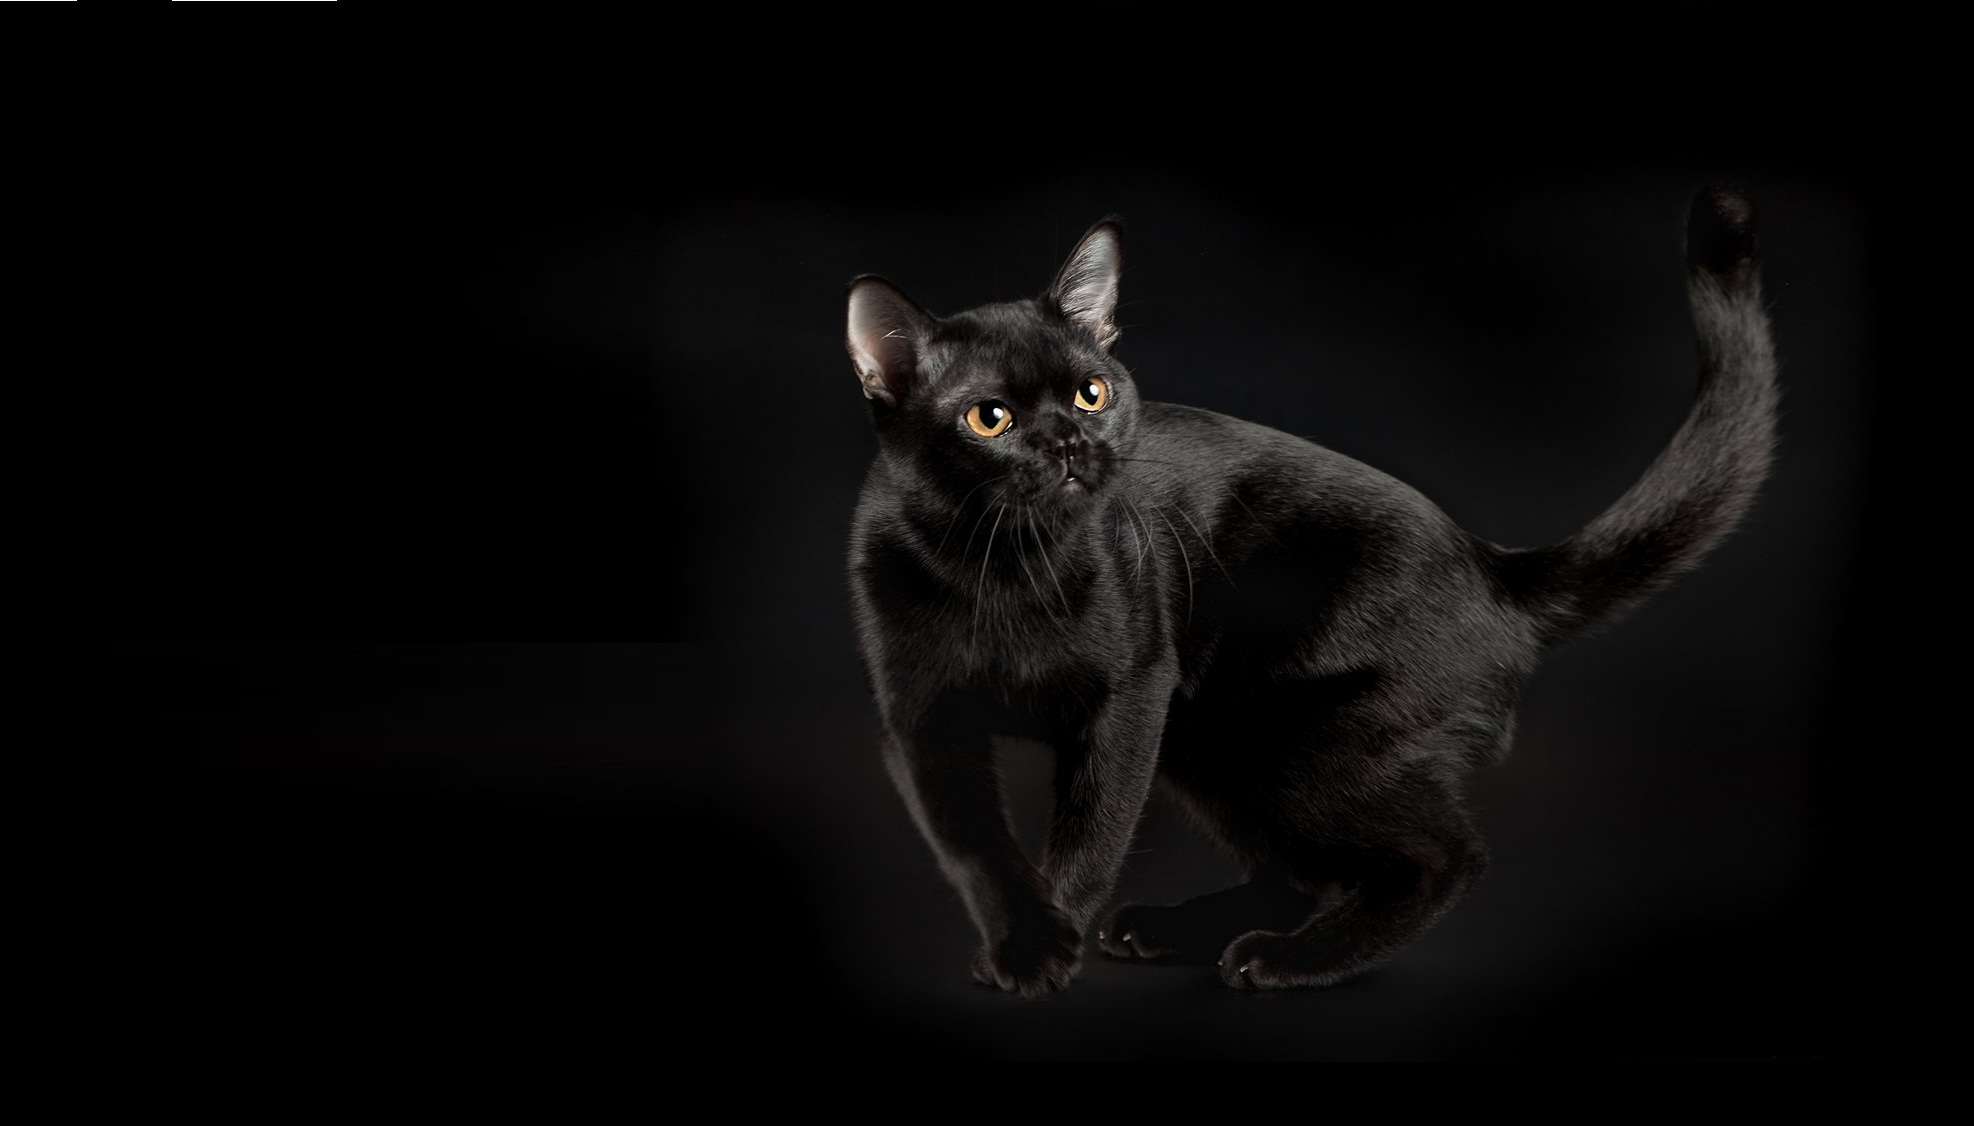 Описание черной кошки. Бомбейская кошка. Бомбейская кошка длинношерстная. Бомбейская черная кошка. Черная кошка порода Бурманская.